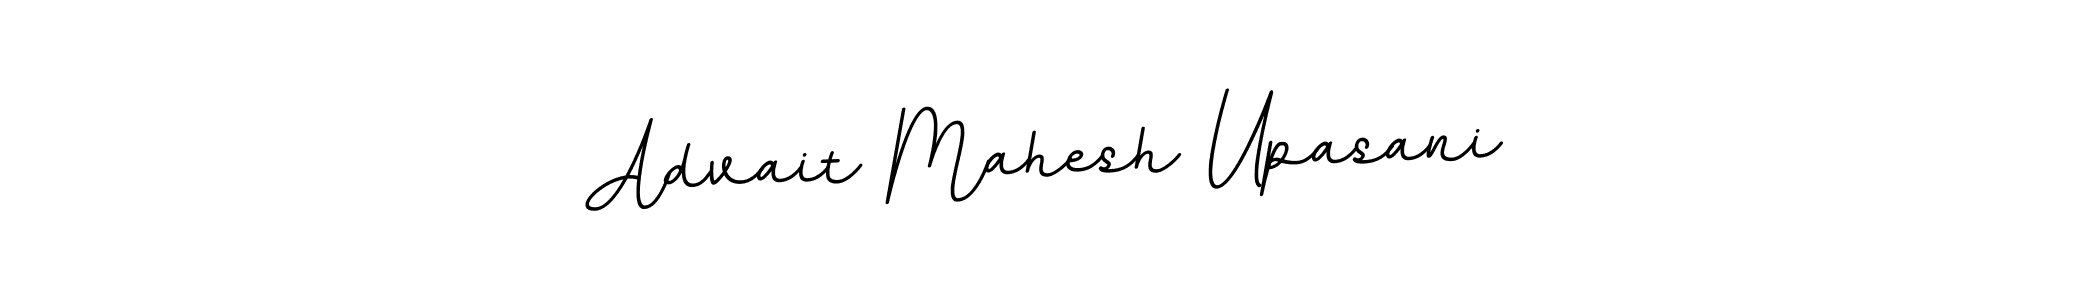 Advait Mahesh Upasani stylish signature style. Best Handwritten Sign (BallpointsItalic-DORy9) for my name. Handwritten Signature Collection Ideas for my name Advait Mahesh Upasani. Advait Mahesh Upasani signature style 11 images and pictures png